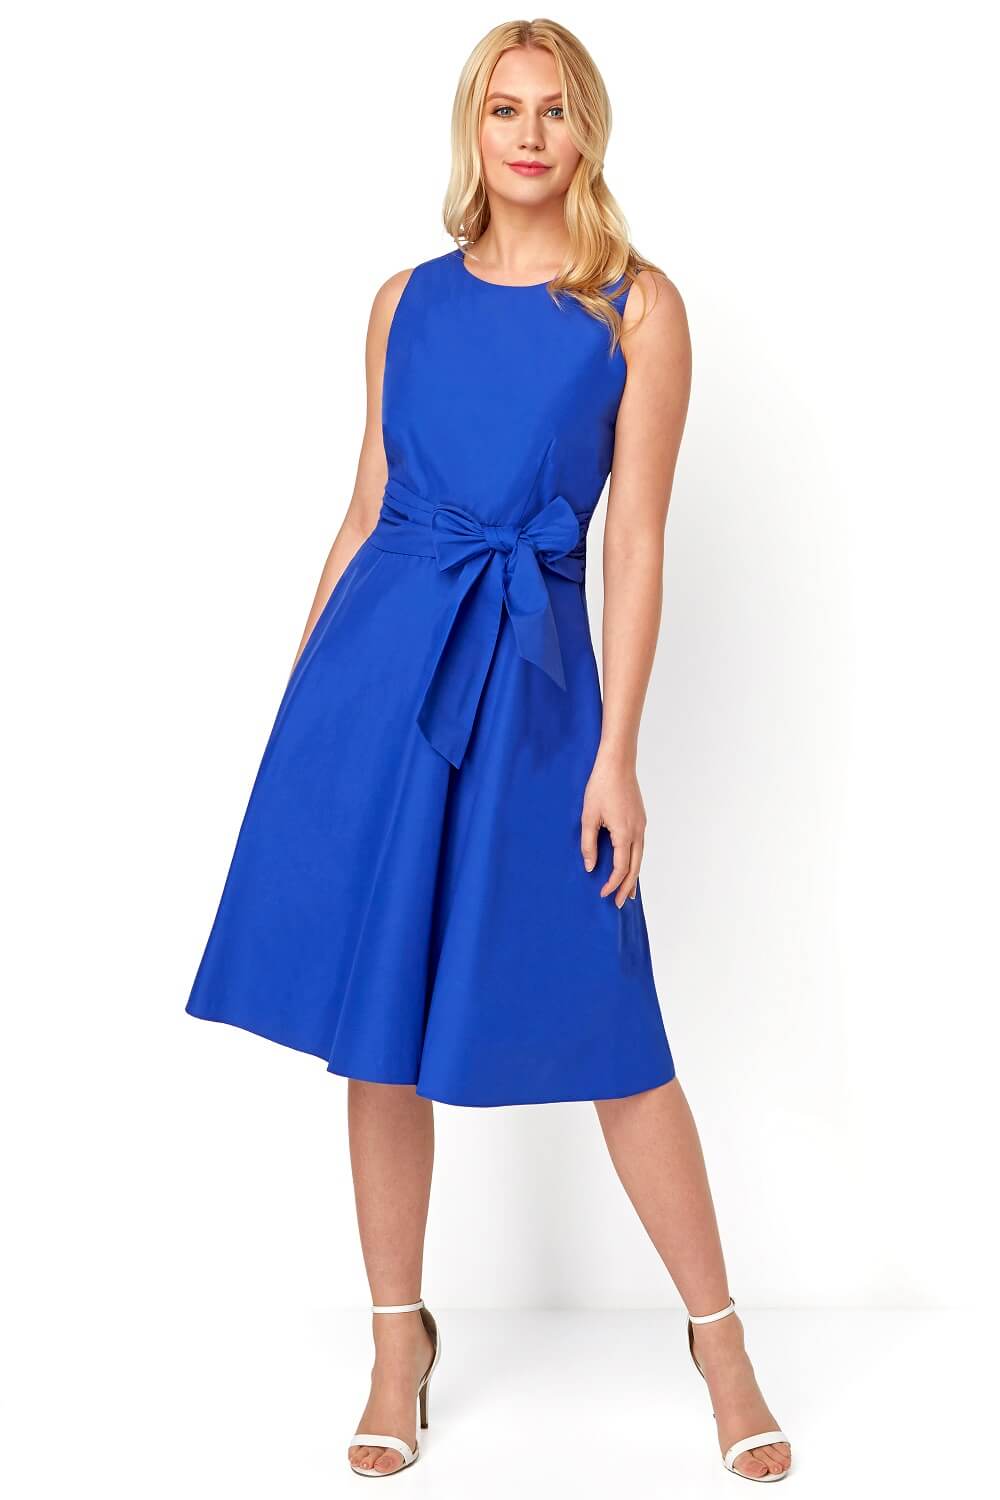 royal blue cotton dress